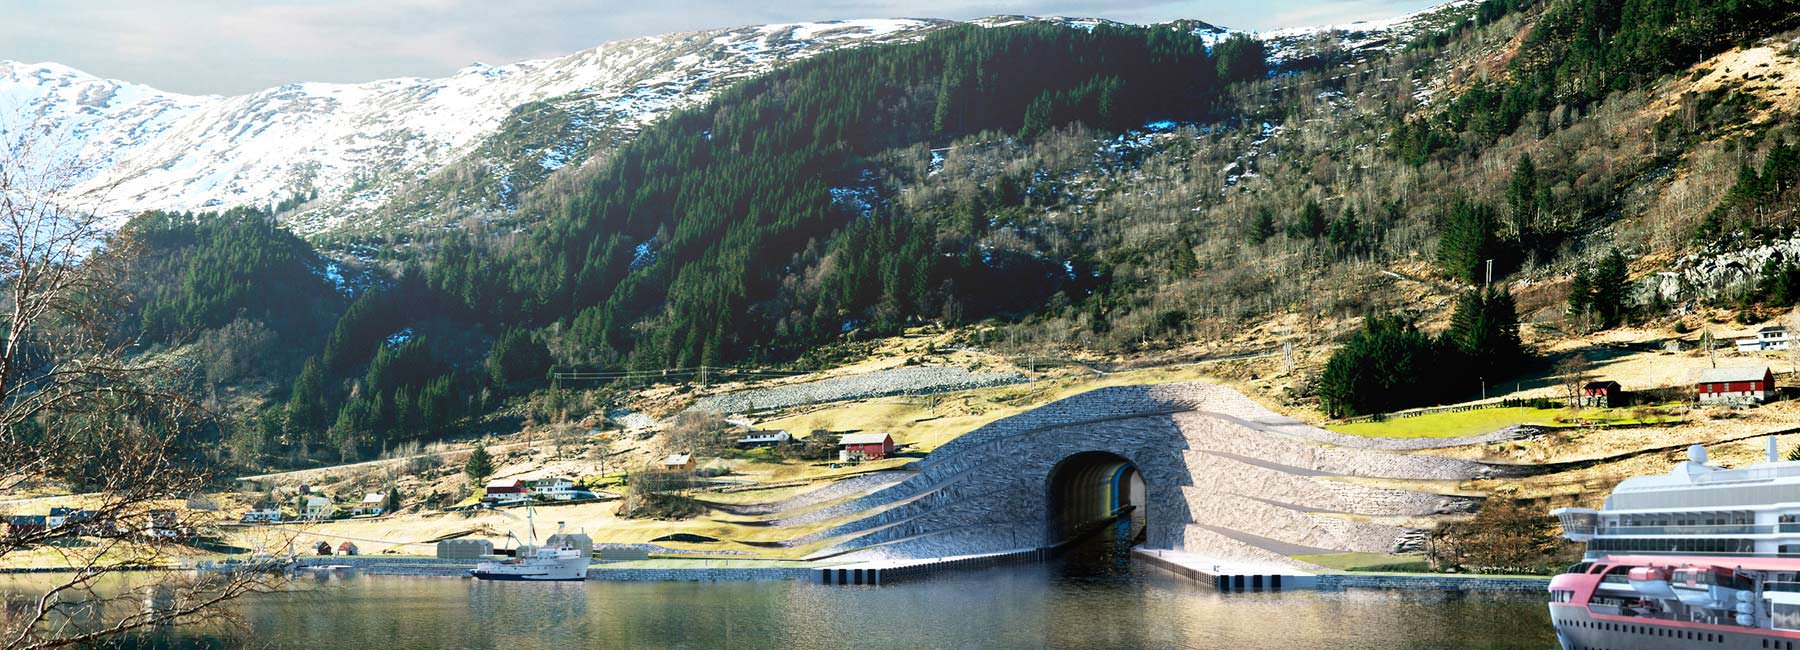 Фото | Первый в мире судоходный тоннель. Проект Snøhetta